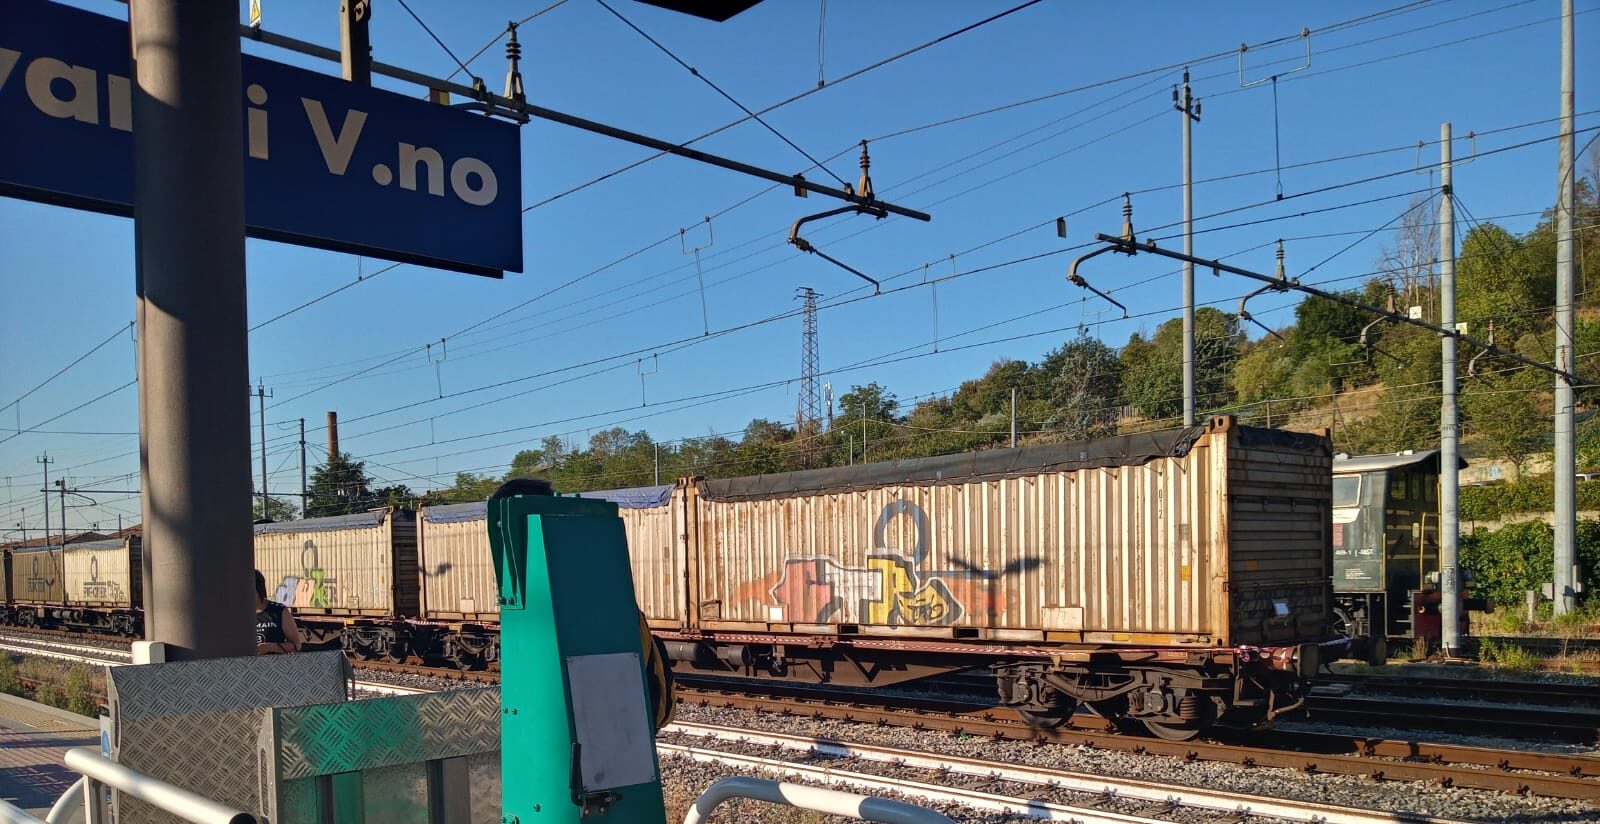 Rifiuti speciali alla Stazione di San Giovanni Valdarno: le analisi confermano pericolosità